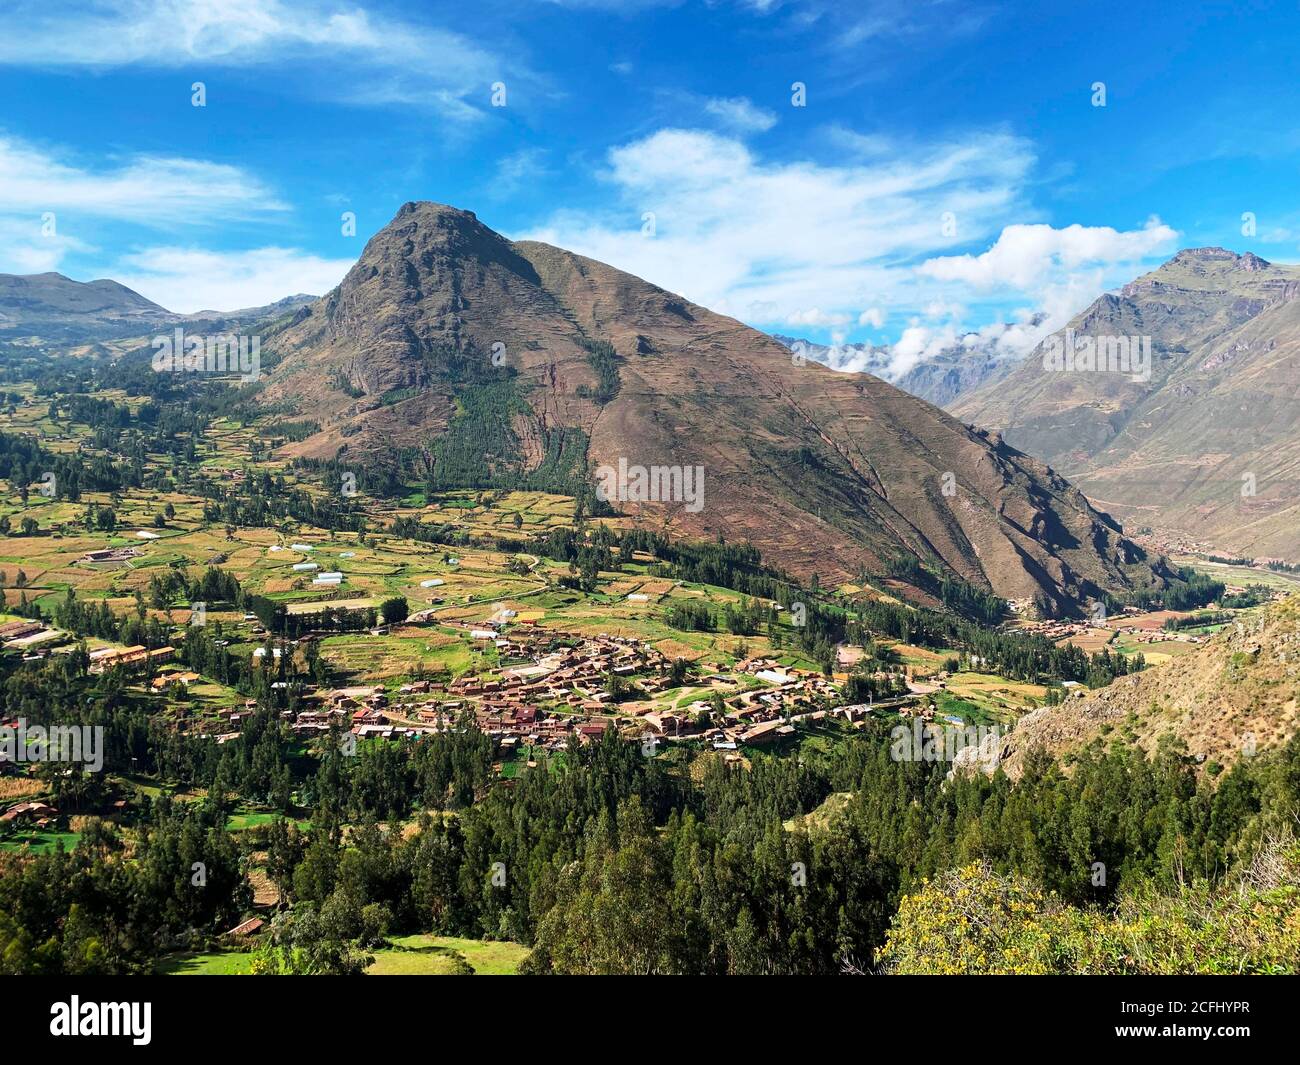 Incroyable Vallée Sacrée de l'Inca, Pérou. Nature pittoresque et verdoyante de la vallée d'Urubamba. Paysage de montagne des Andes. Magnifique été péruvien. Banque D'Images